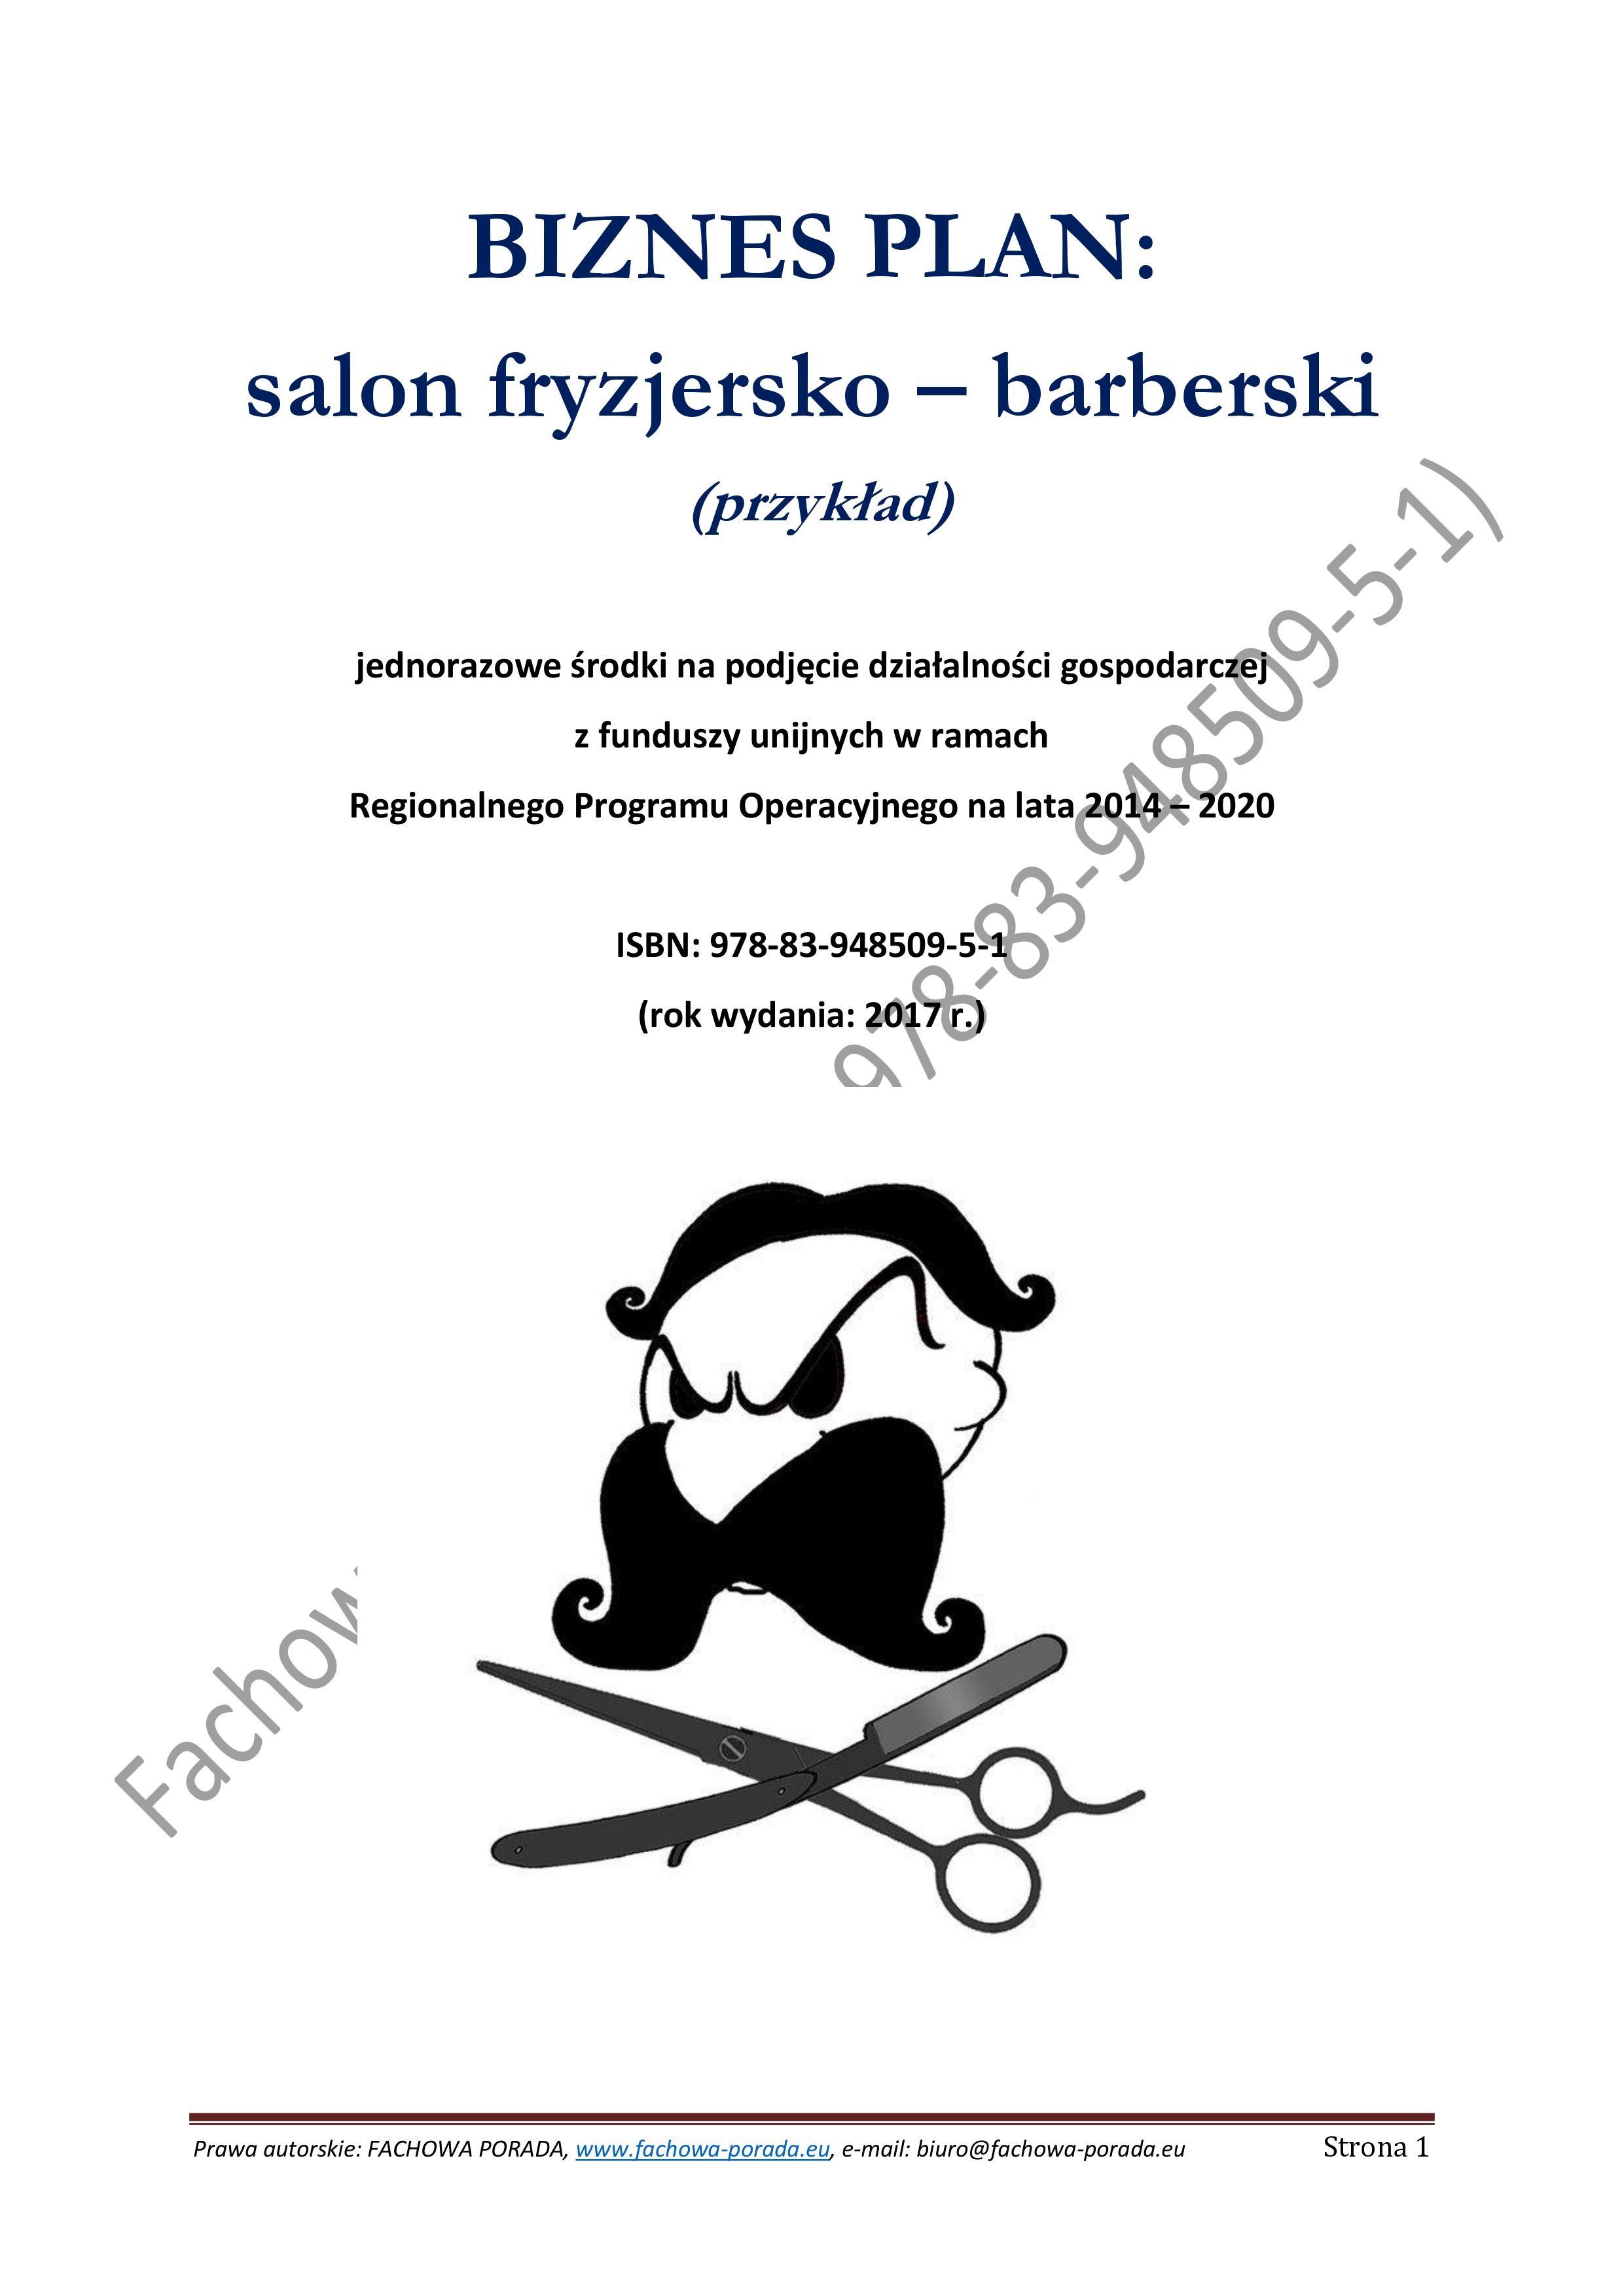 BIZNESPLAN  salon fryzjersko  barberski (przykład) 2017